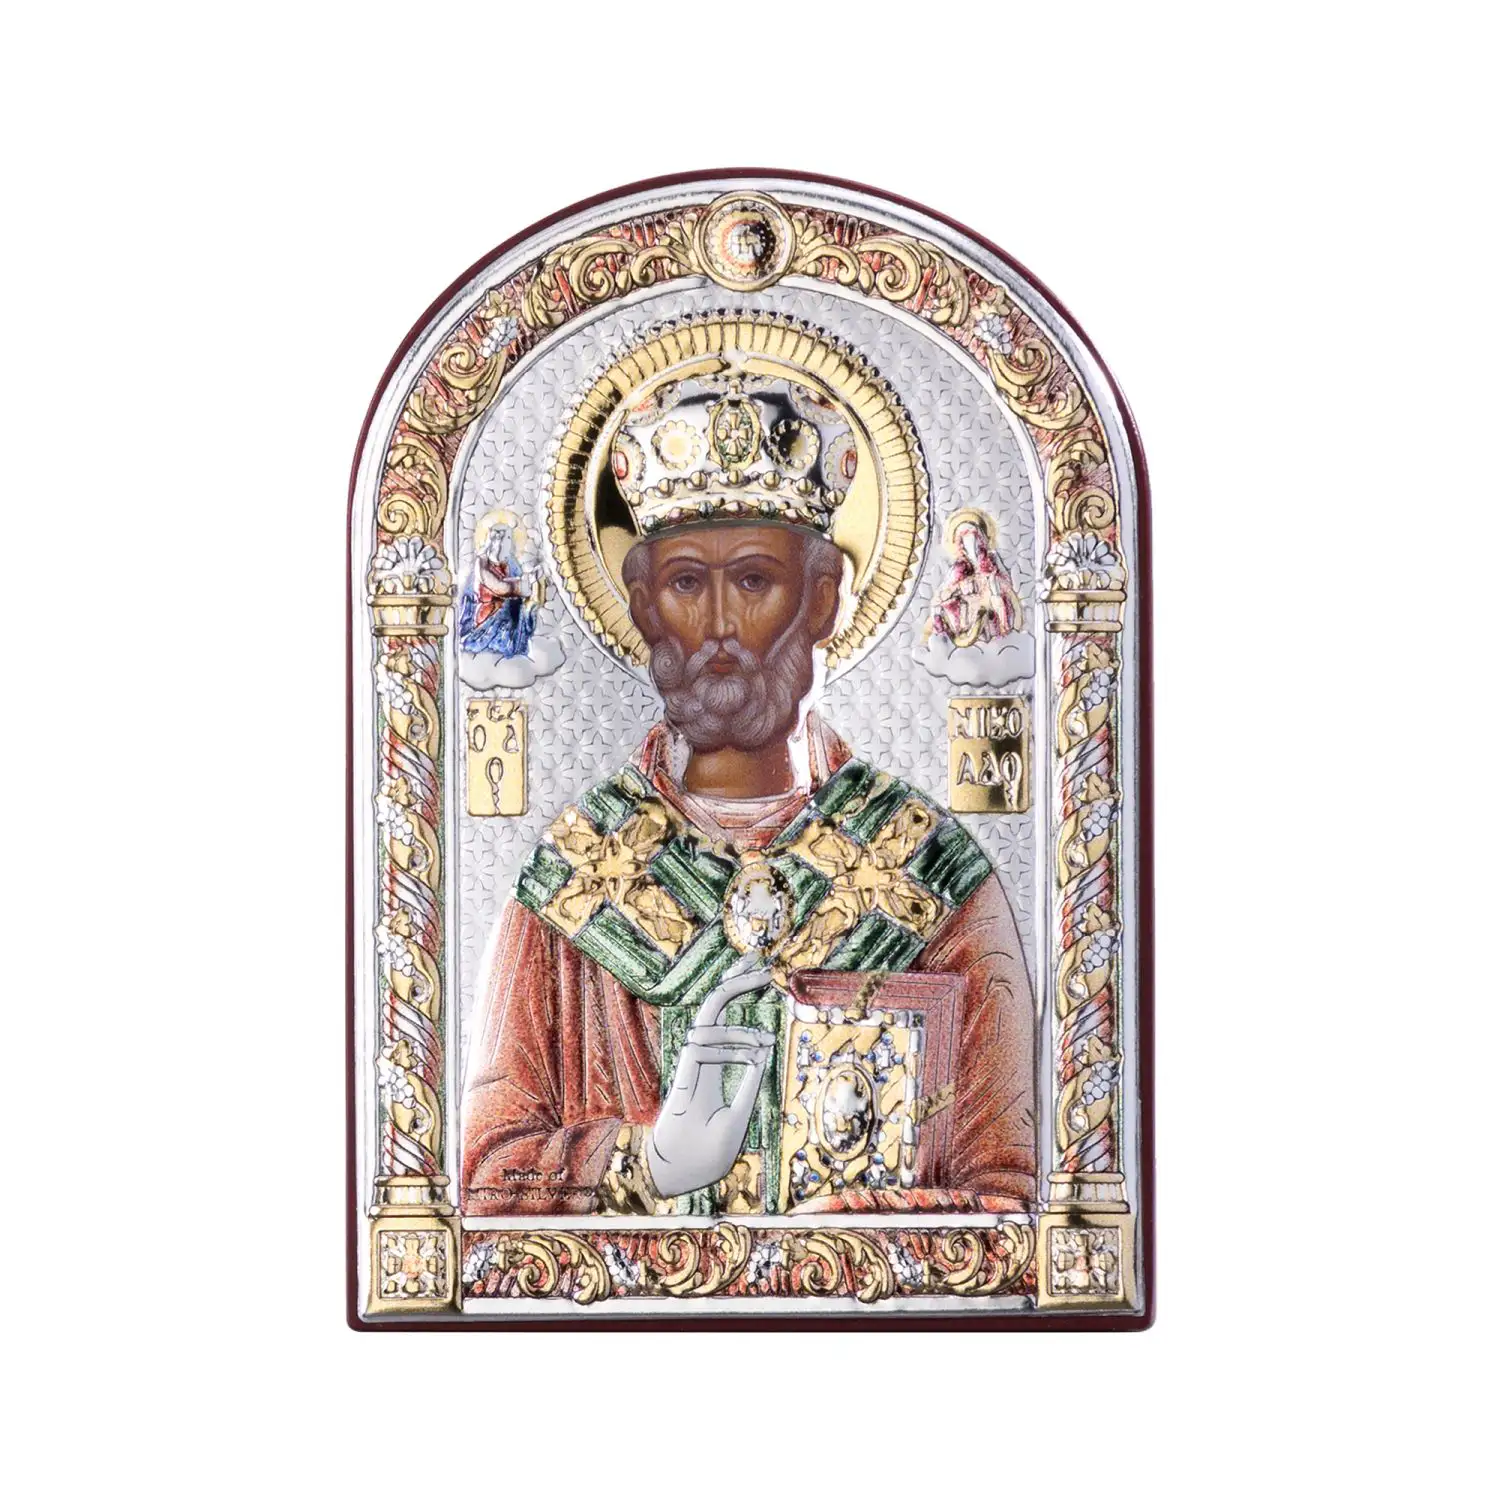 Икона Святой Николай Чудотворец (7.5*11) икона николай чудотворец 12х11 5 нч 761 прямая печать по левкасу золочение